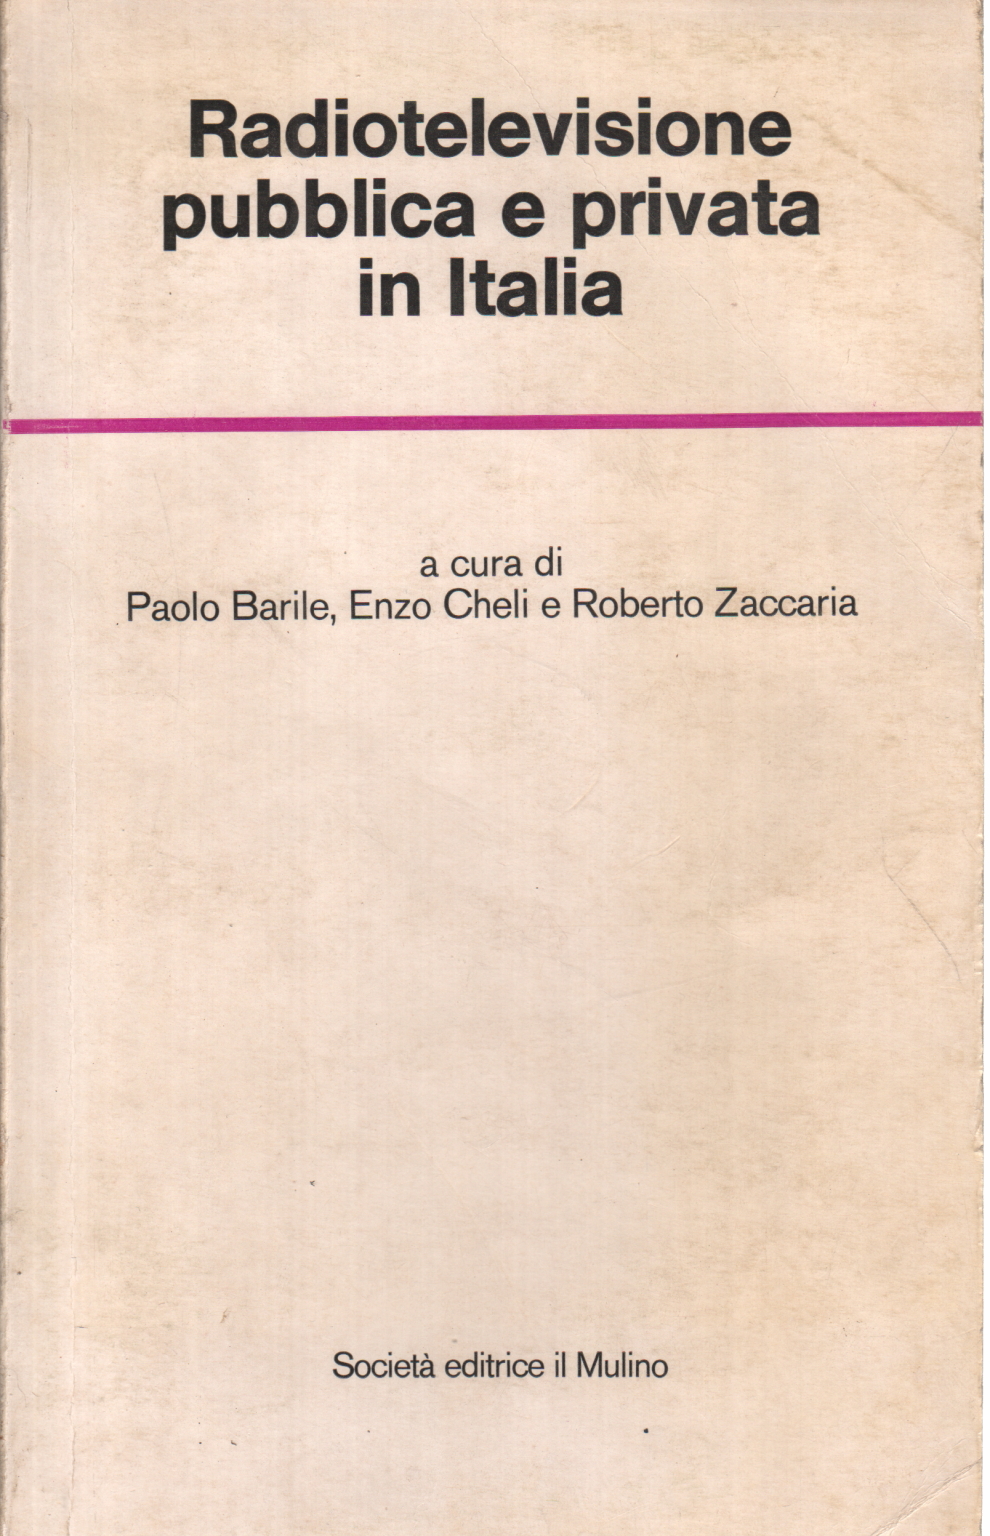 Radiotelevisione pubblica e privata in Italia, Paolo Barile Enzo Cheli Roberto Zaccaria